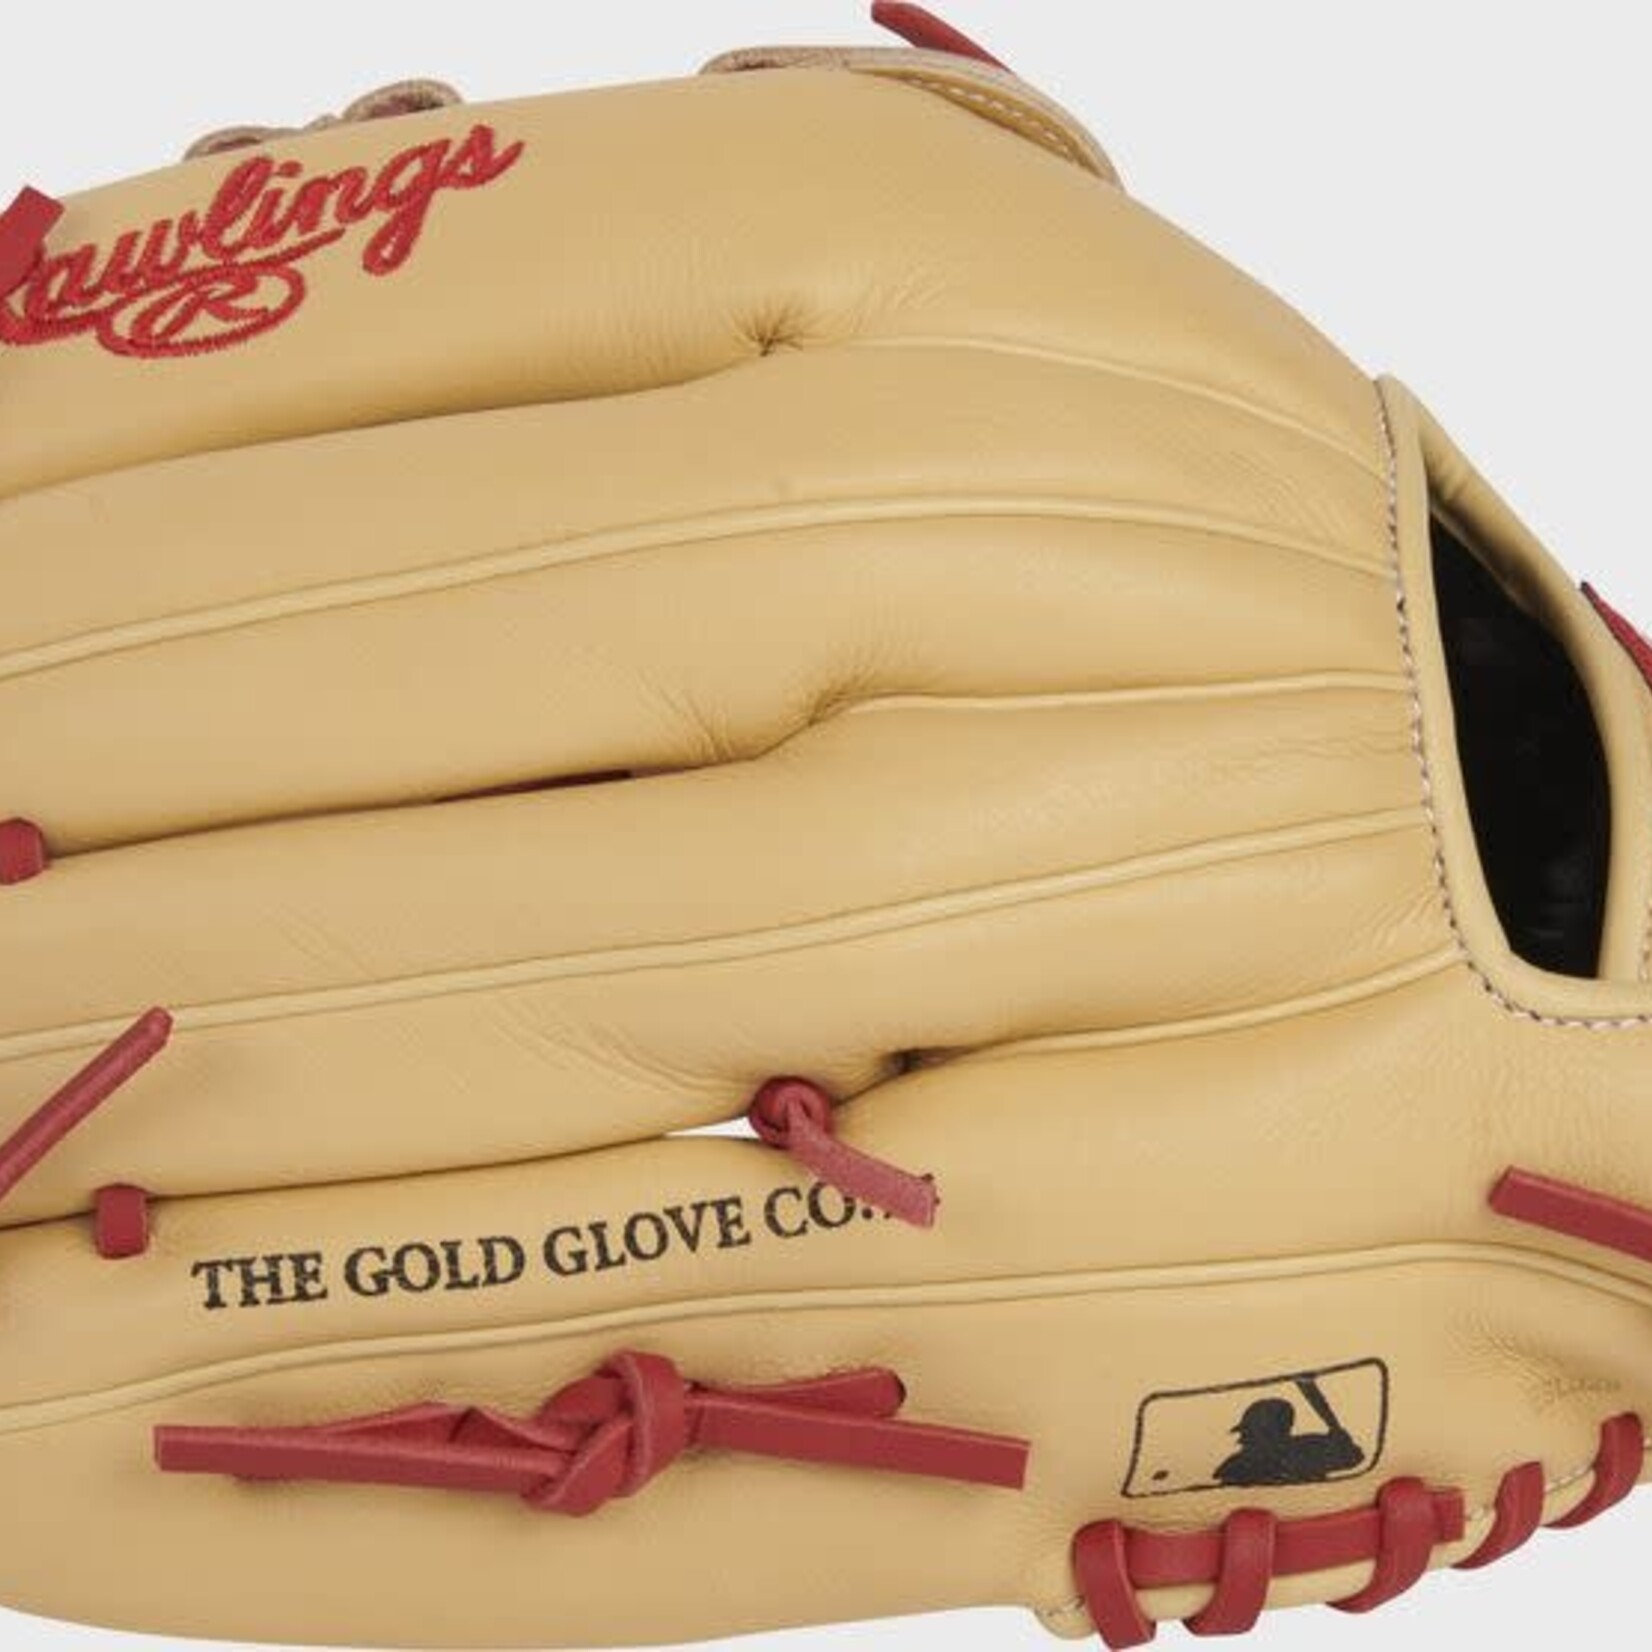 Rawlings Rawlings Baseball Glove, Select Pro Lite SPL120BHC, 12”, Reg, Youth